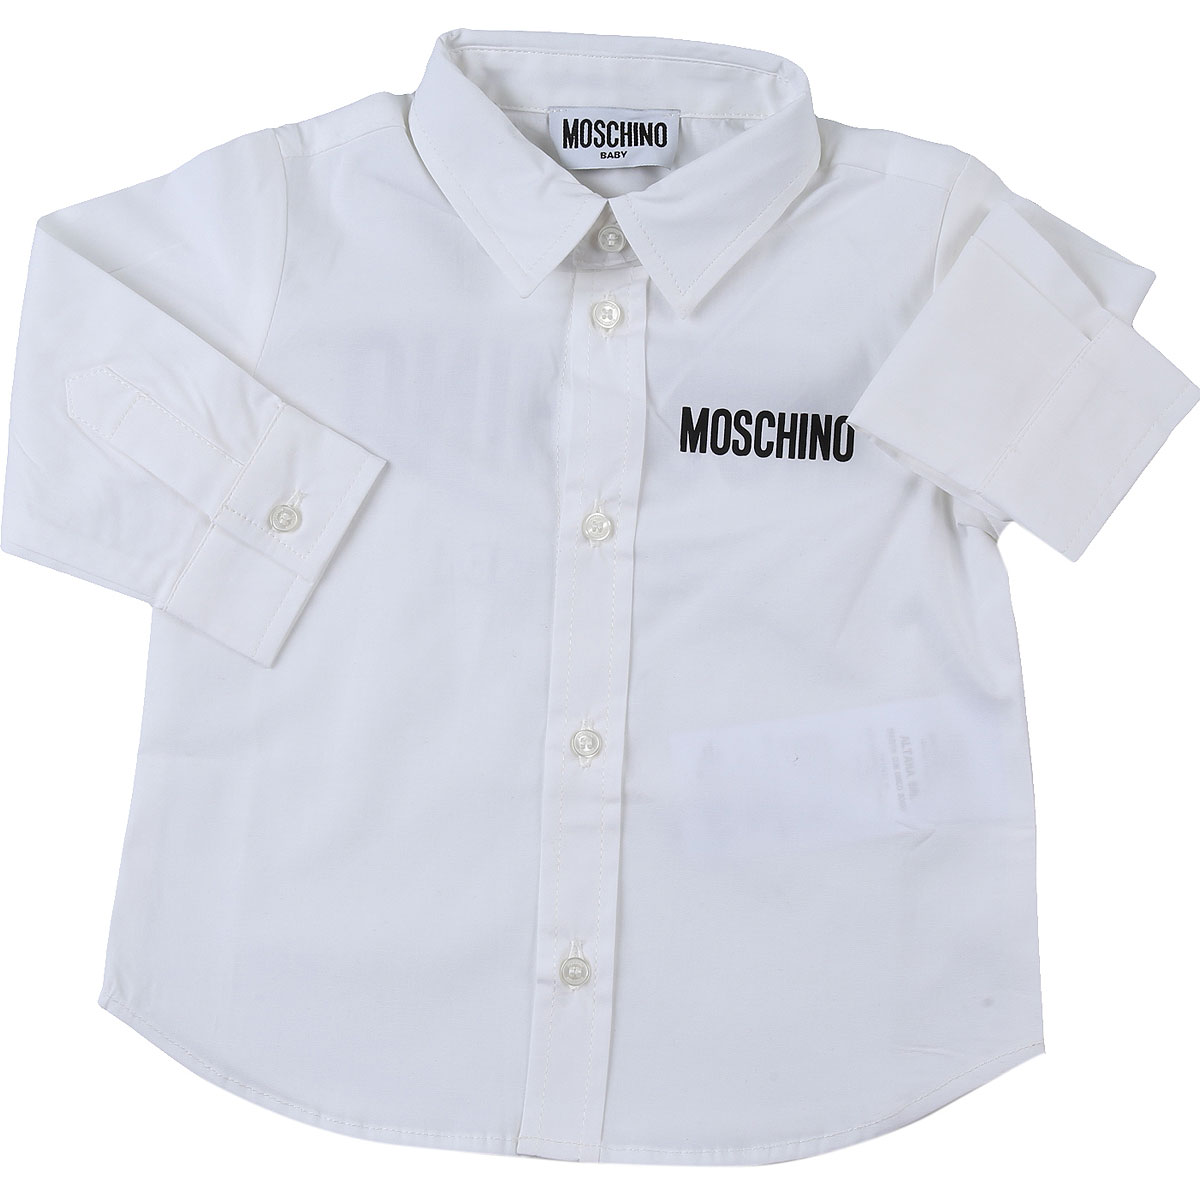 Moschino Baby Hemd für Jungen Günstig im Sale, Weiss, Baumwolle, 2017, 12 M 24M 2Y 3Y 9M